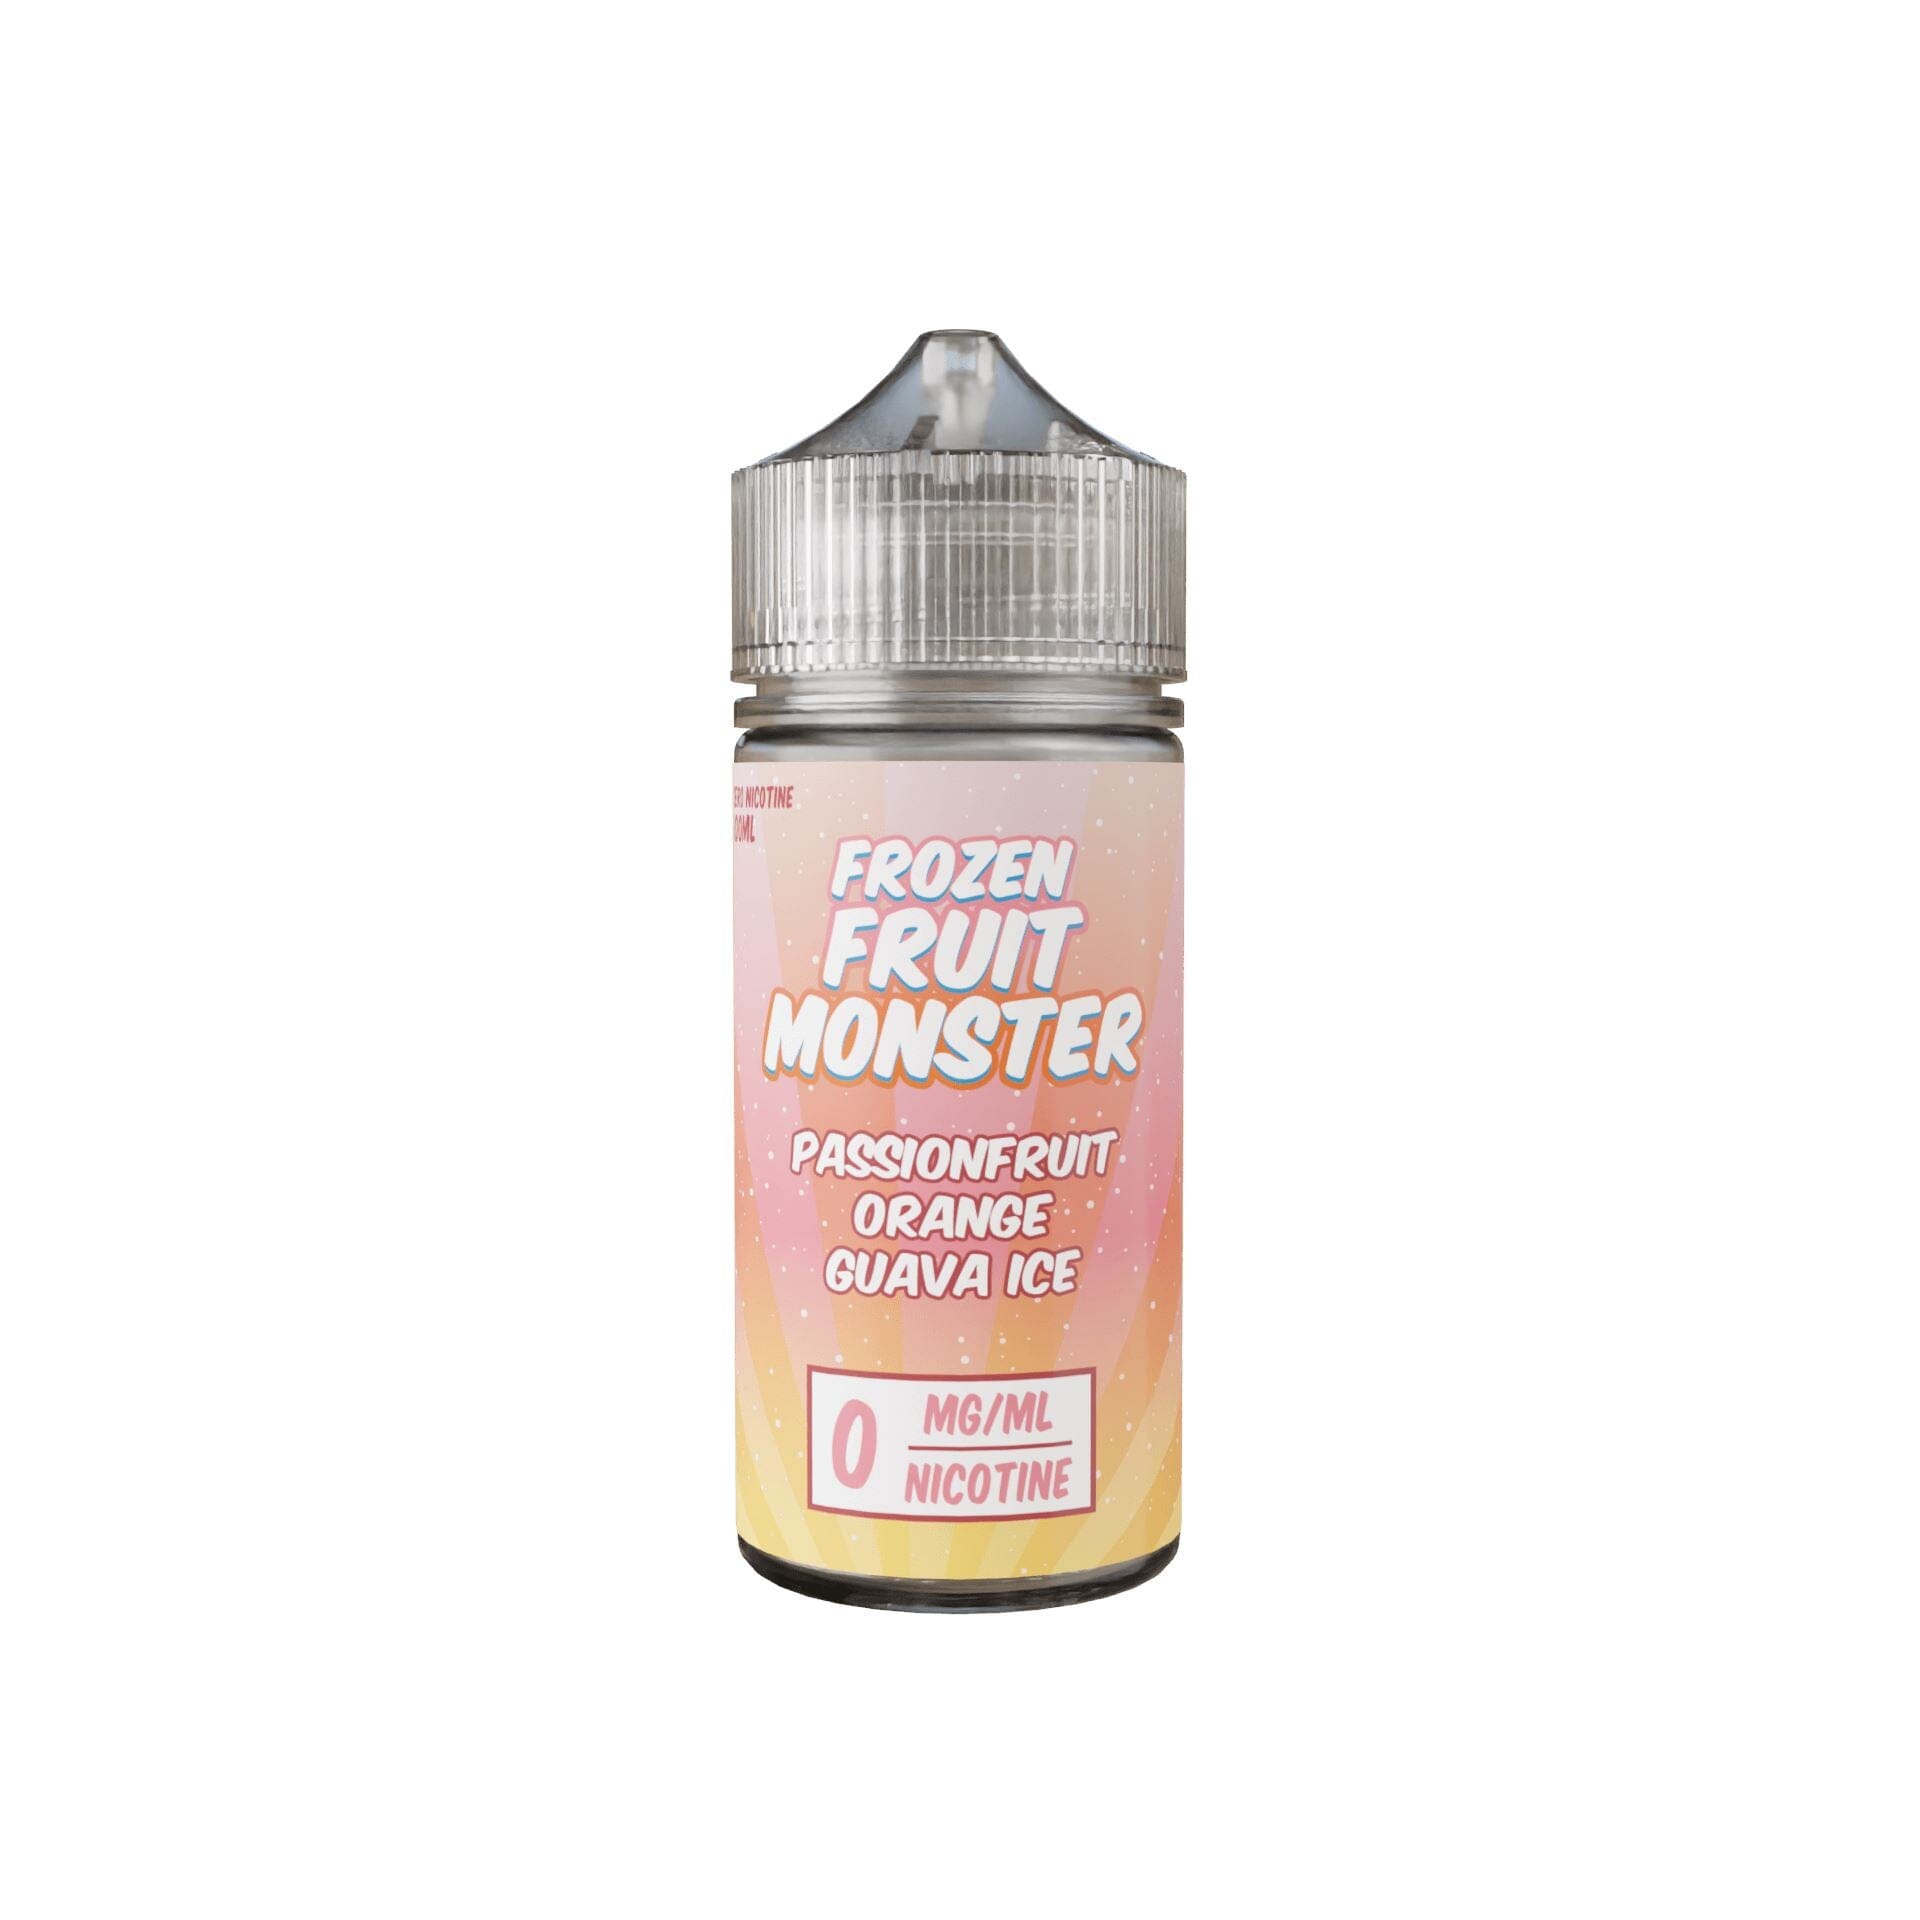 SALE Frozen Fruit Monster - Passionfruit Orange Guava Ice - Vapoureyes